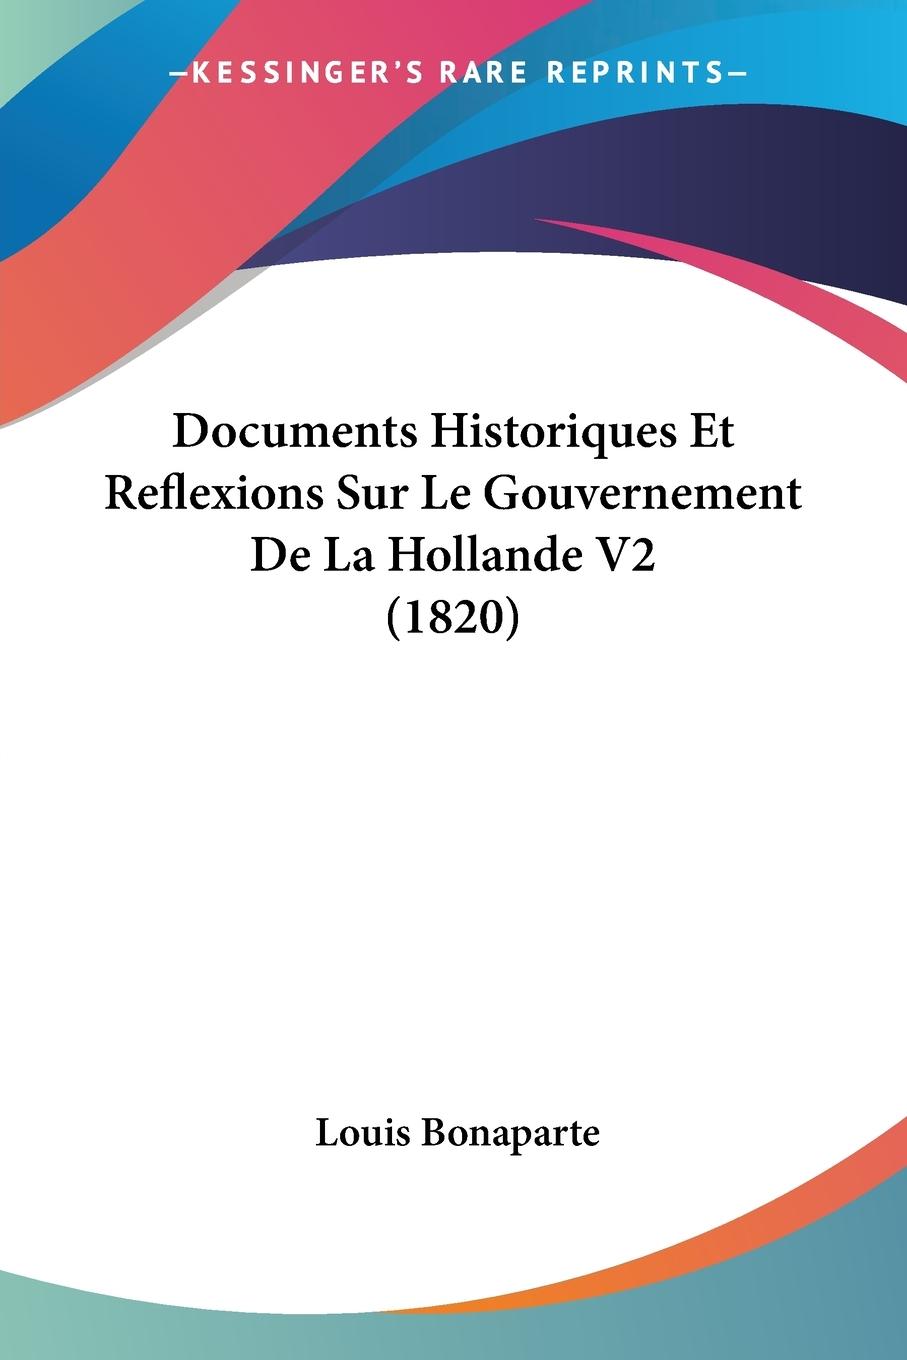 Documents Historiques Et Reflexions Sur Le Gouvernement De La Hollande V2 (1820) - Bonaparte, Louis